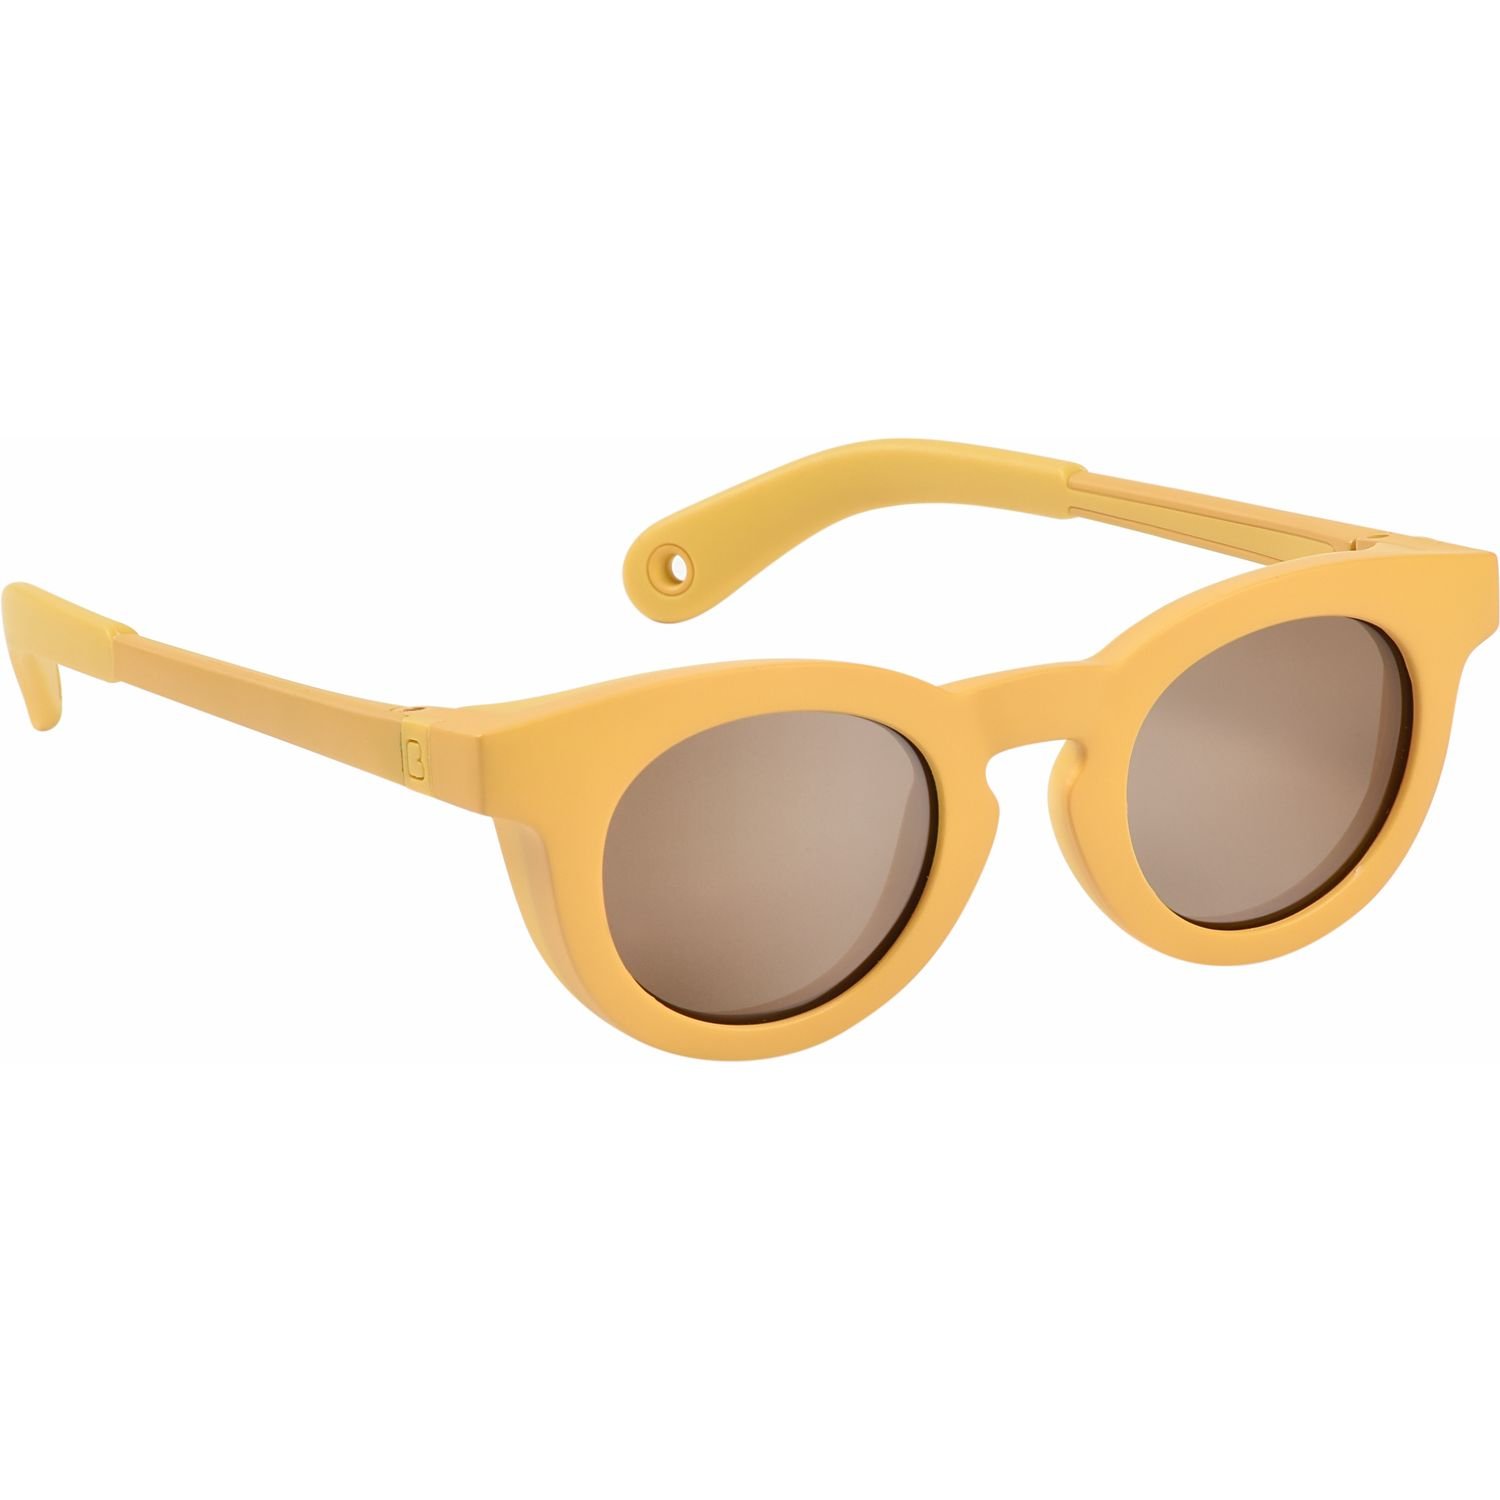 Дитячі сонцезахисні окуляри Beaba, 9-24 міс., жовті (930342) - фото 1